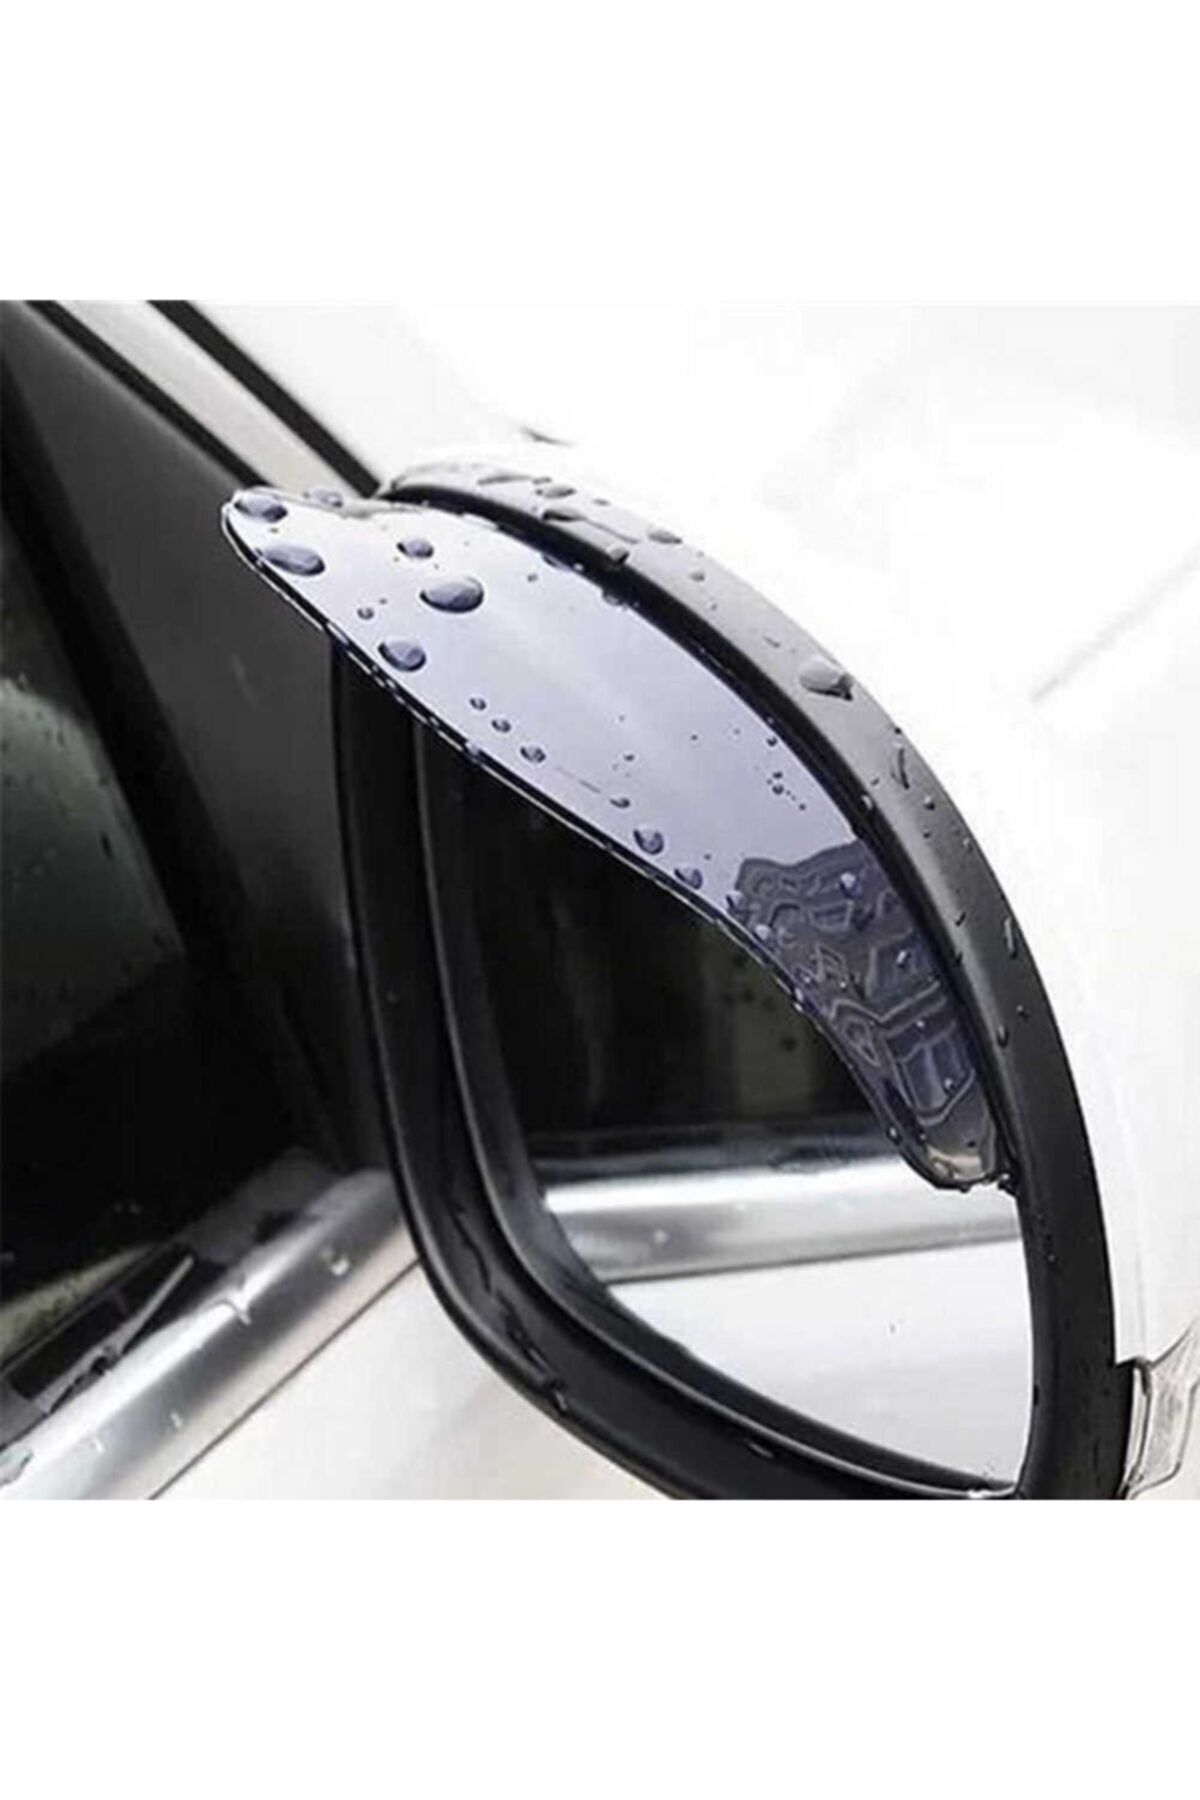 Unikum Tata Isoto Araç Ayna Yağmur Koruyucu 2 Adet